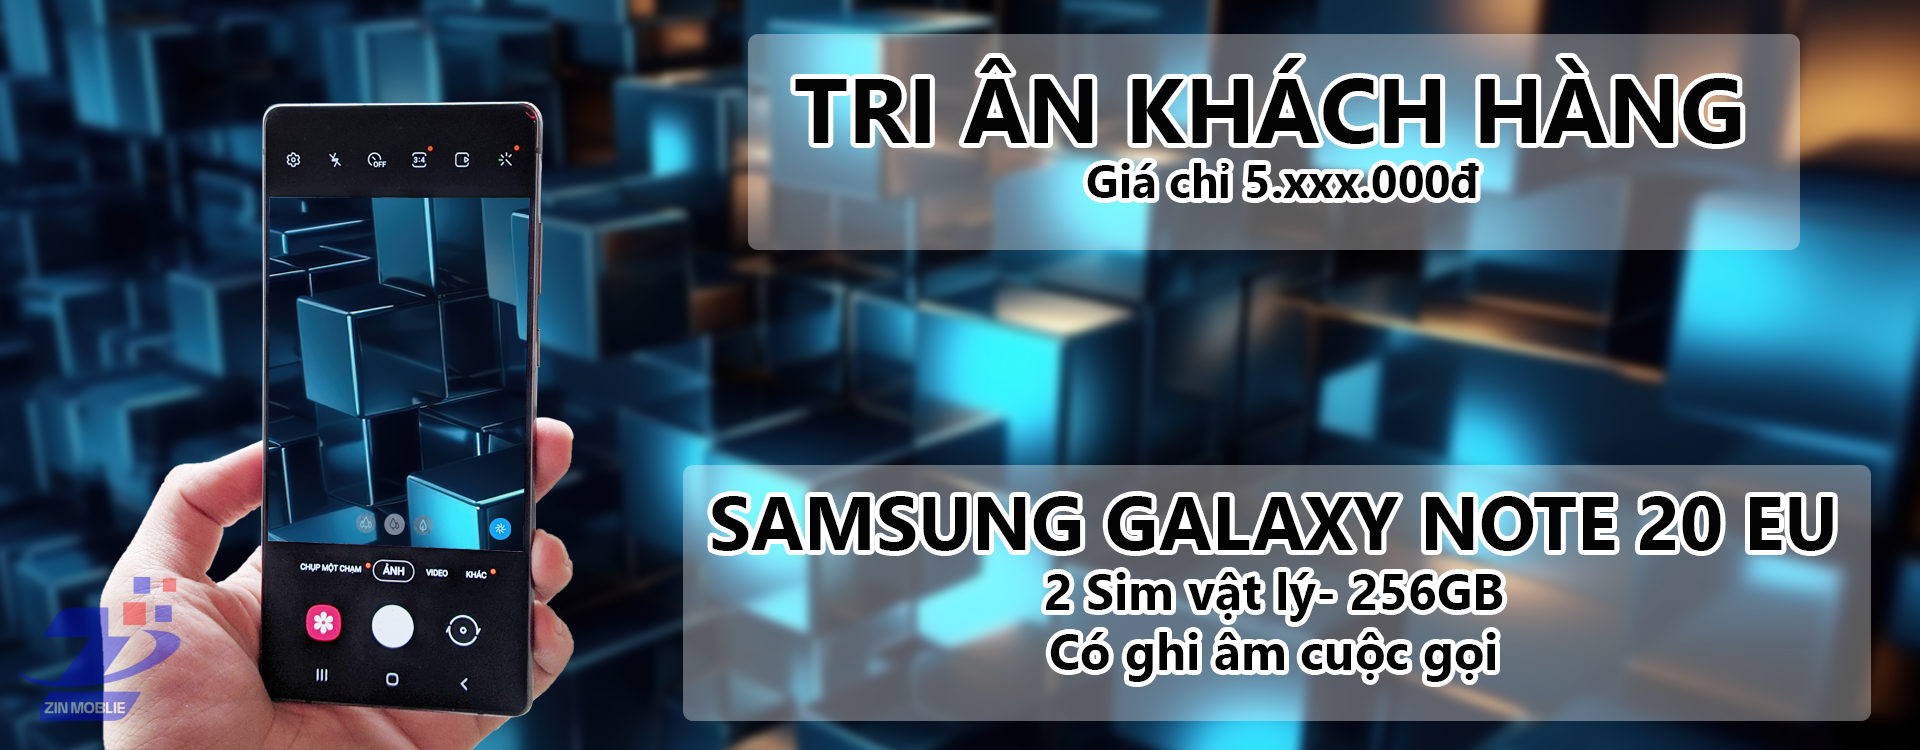 Samsung Galaxy Note 20 EU 2 sim - 256Gb